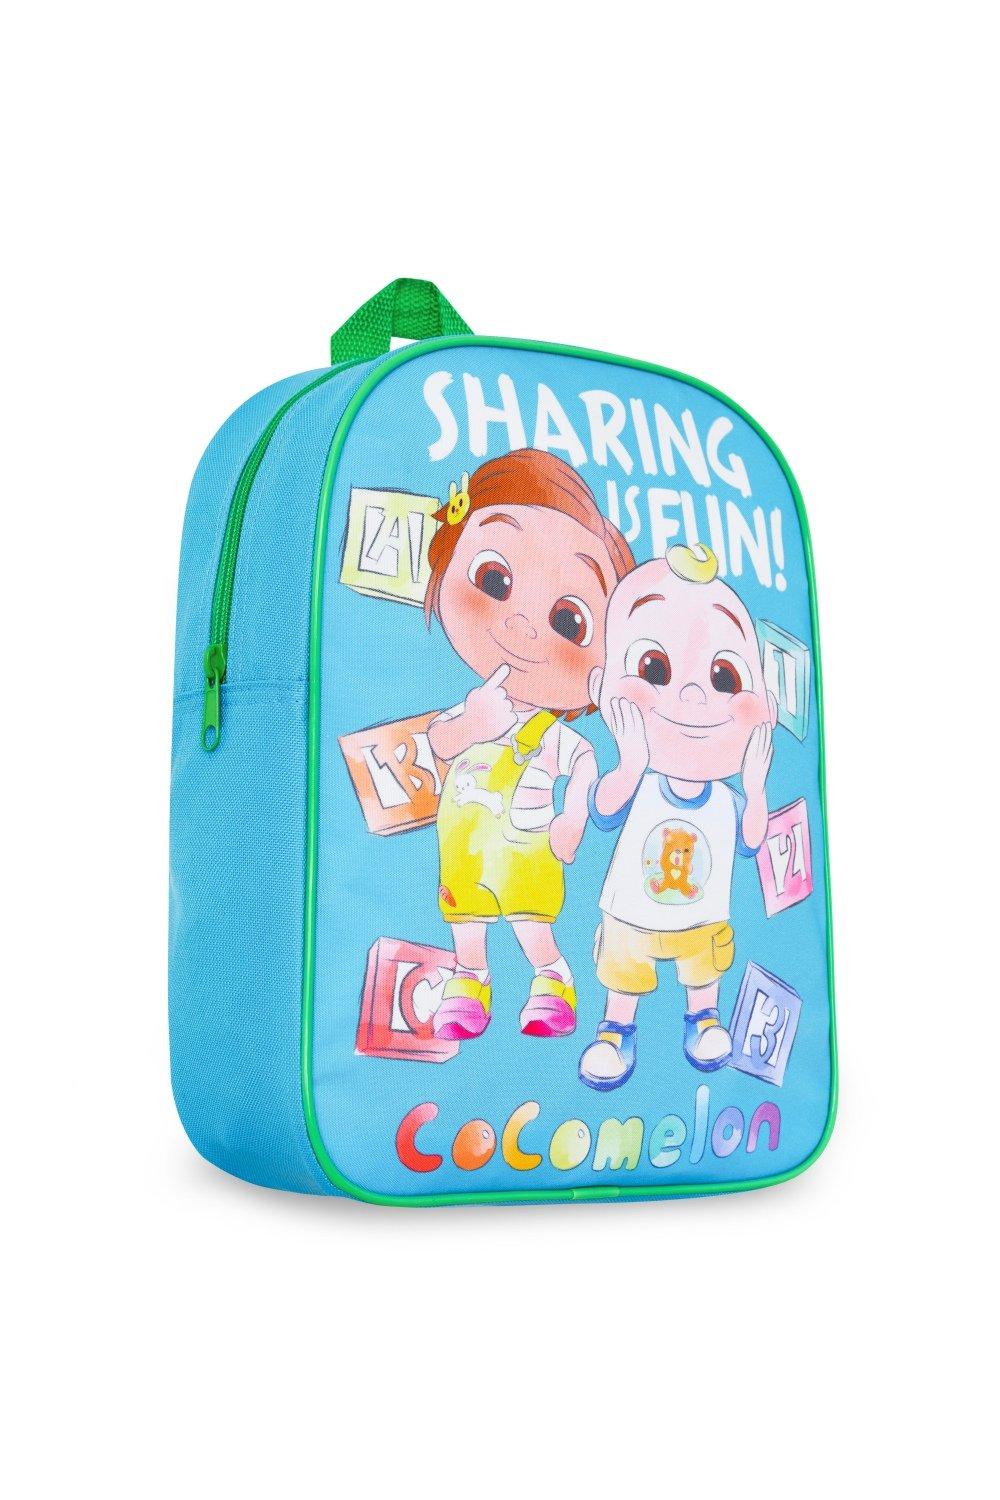 Графический рюкзак 30 x 24 x 9 см Cocomelon, мультиколор детский рюкзак в kidergarten милый школьный рюкзак для мальчиков и девочек школьные сумки с мультипликационным рисунком детский подарок школь